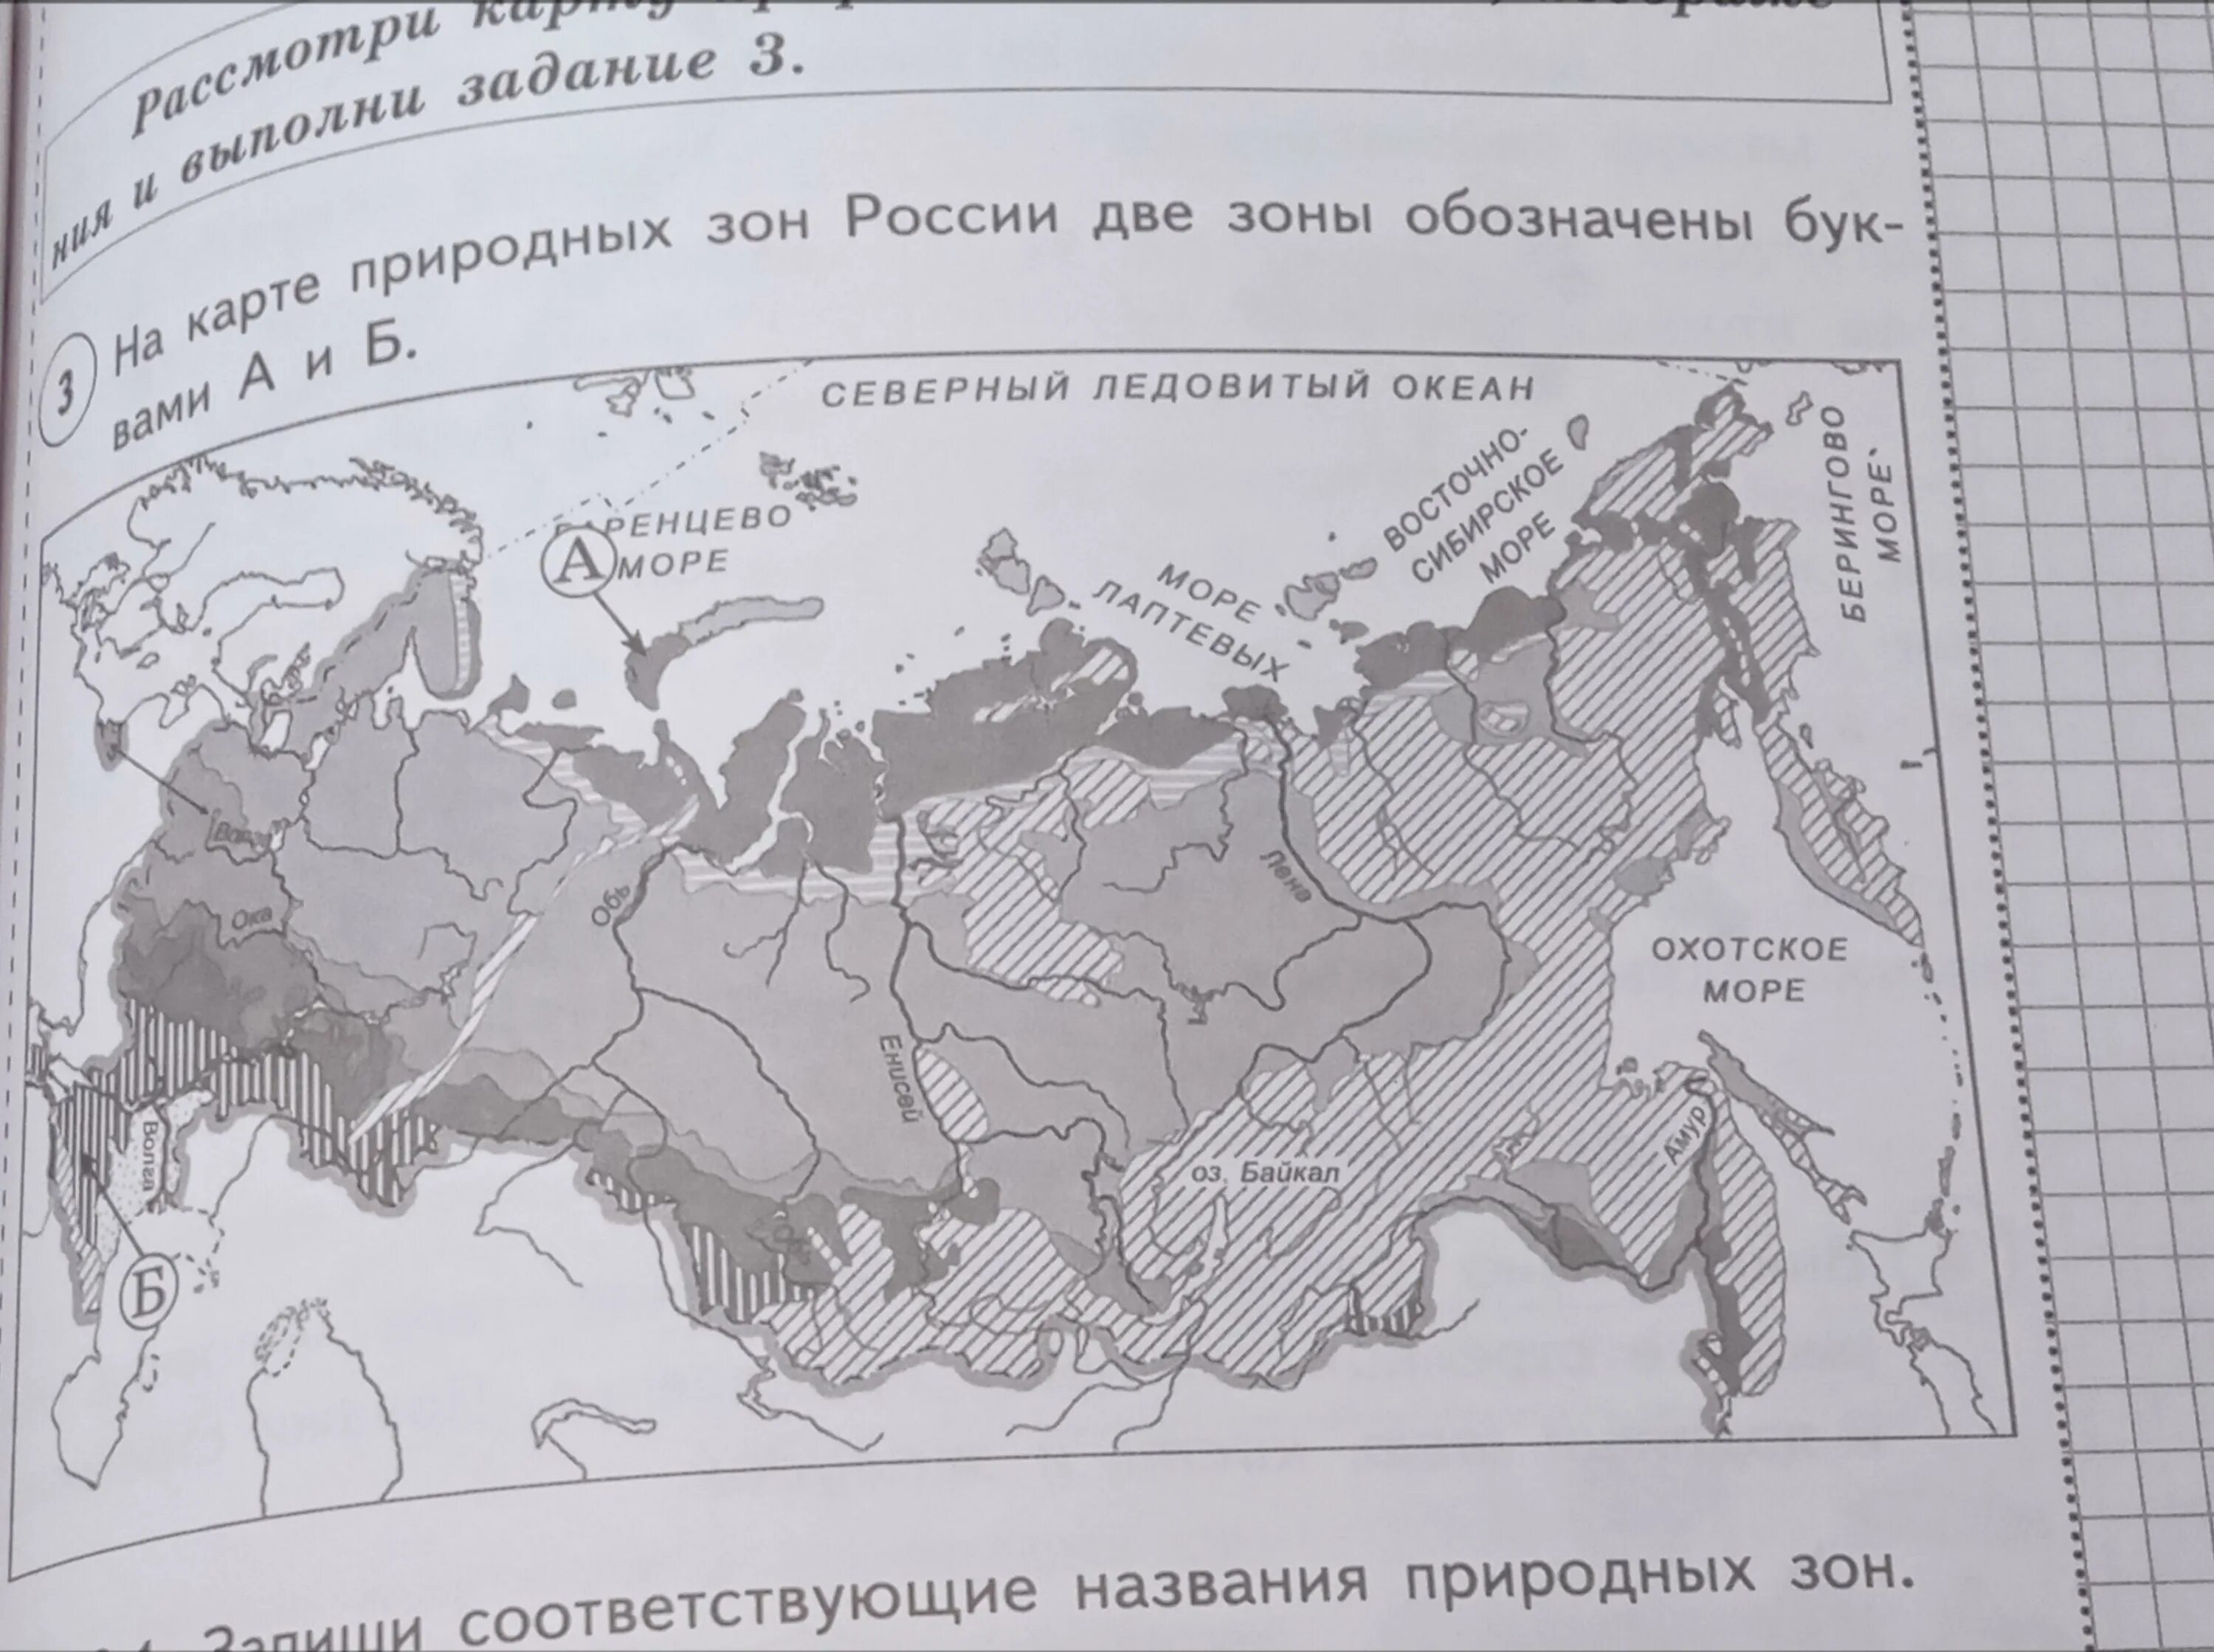 Природные зоны россии впр ответы. На карте природных зон России две зоны обозначены. Природные зоны под буквами а и б. Запиши соответствующие названия природных зон название зоны.